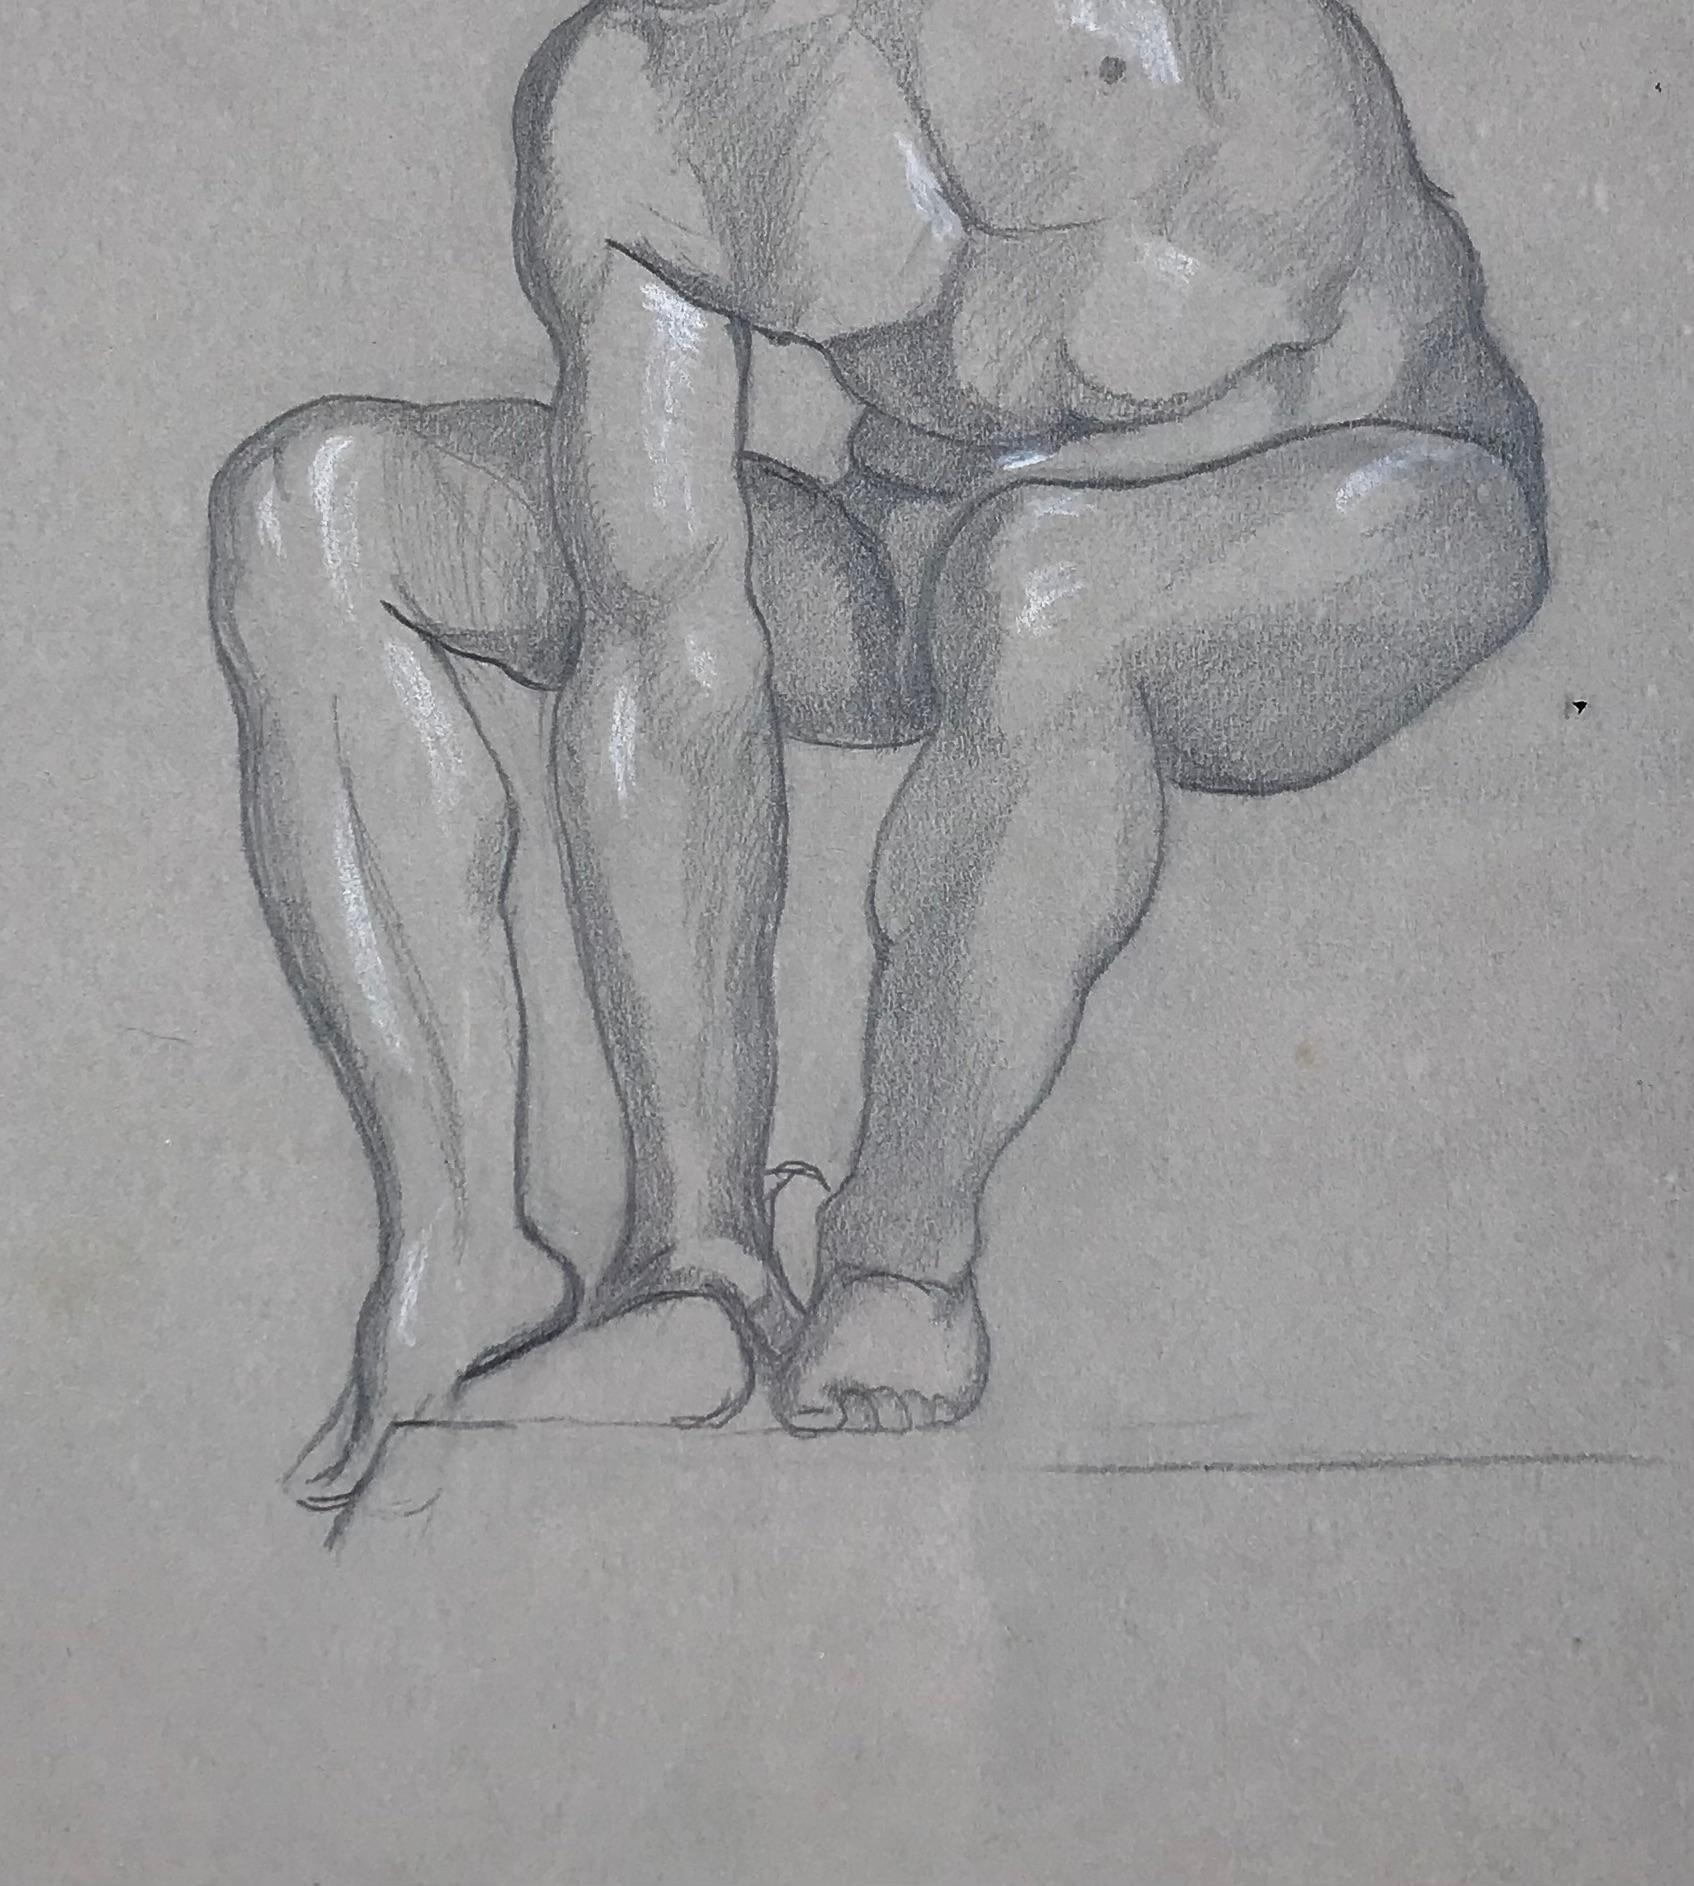 Male Nude - Original Pencil and White Lead on Paper by L. Russolo - 1920s - Futurist Art by Luigi Russolo